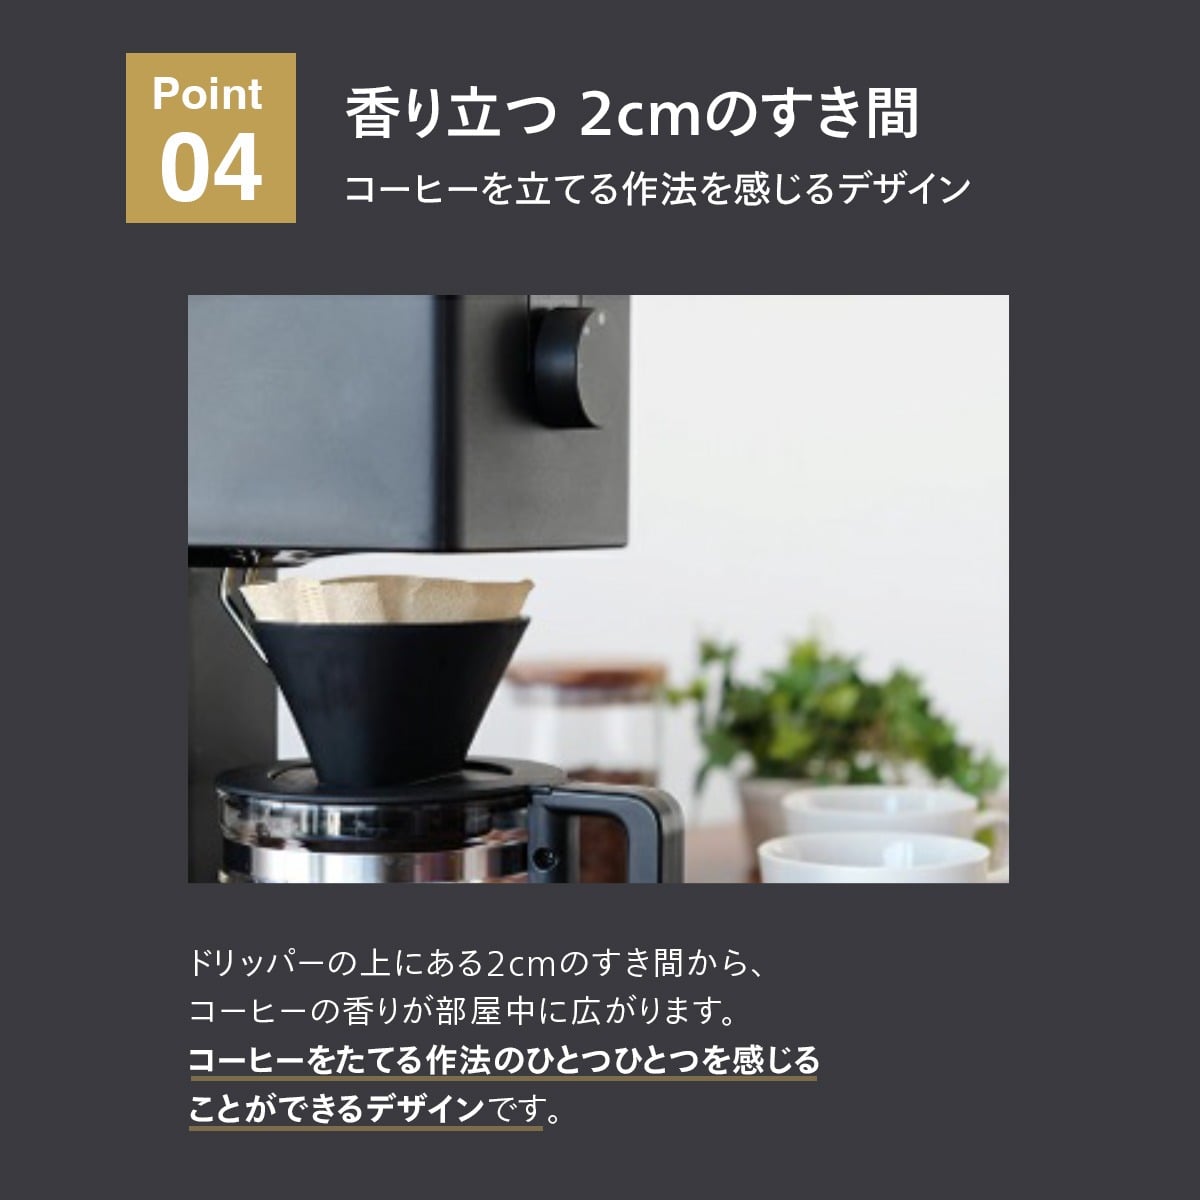 ツインバード 全自動コーヒーメーカー CM-D465B (6杯用) フィルター